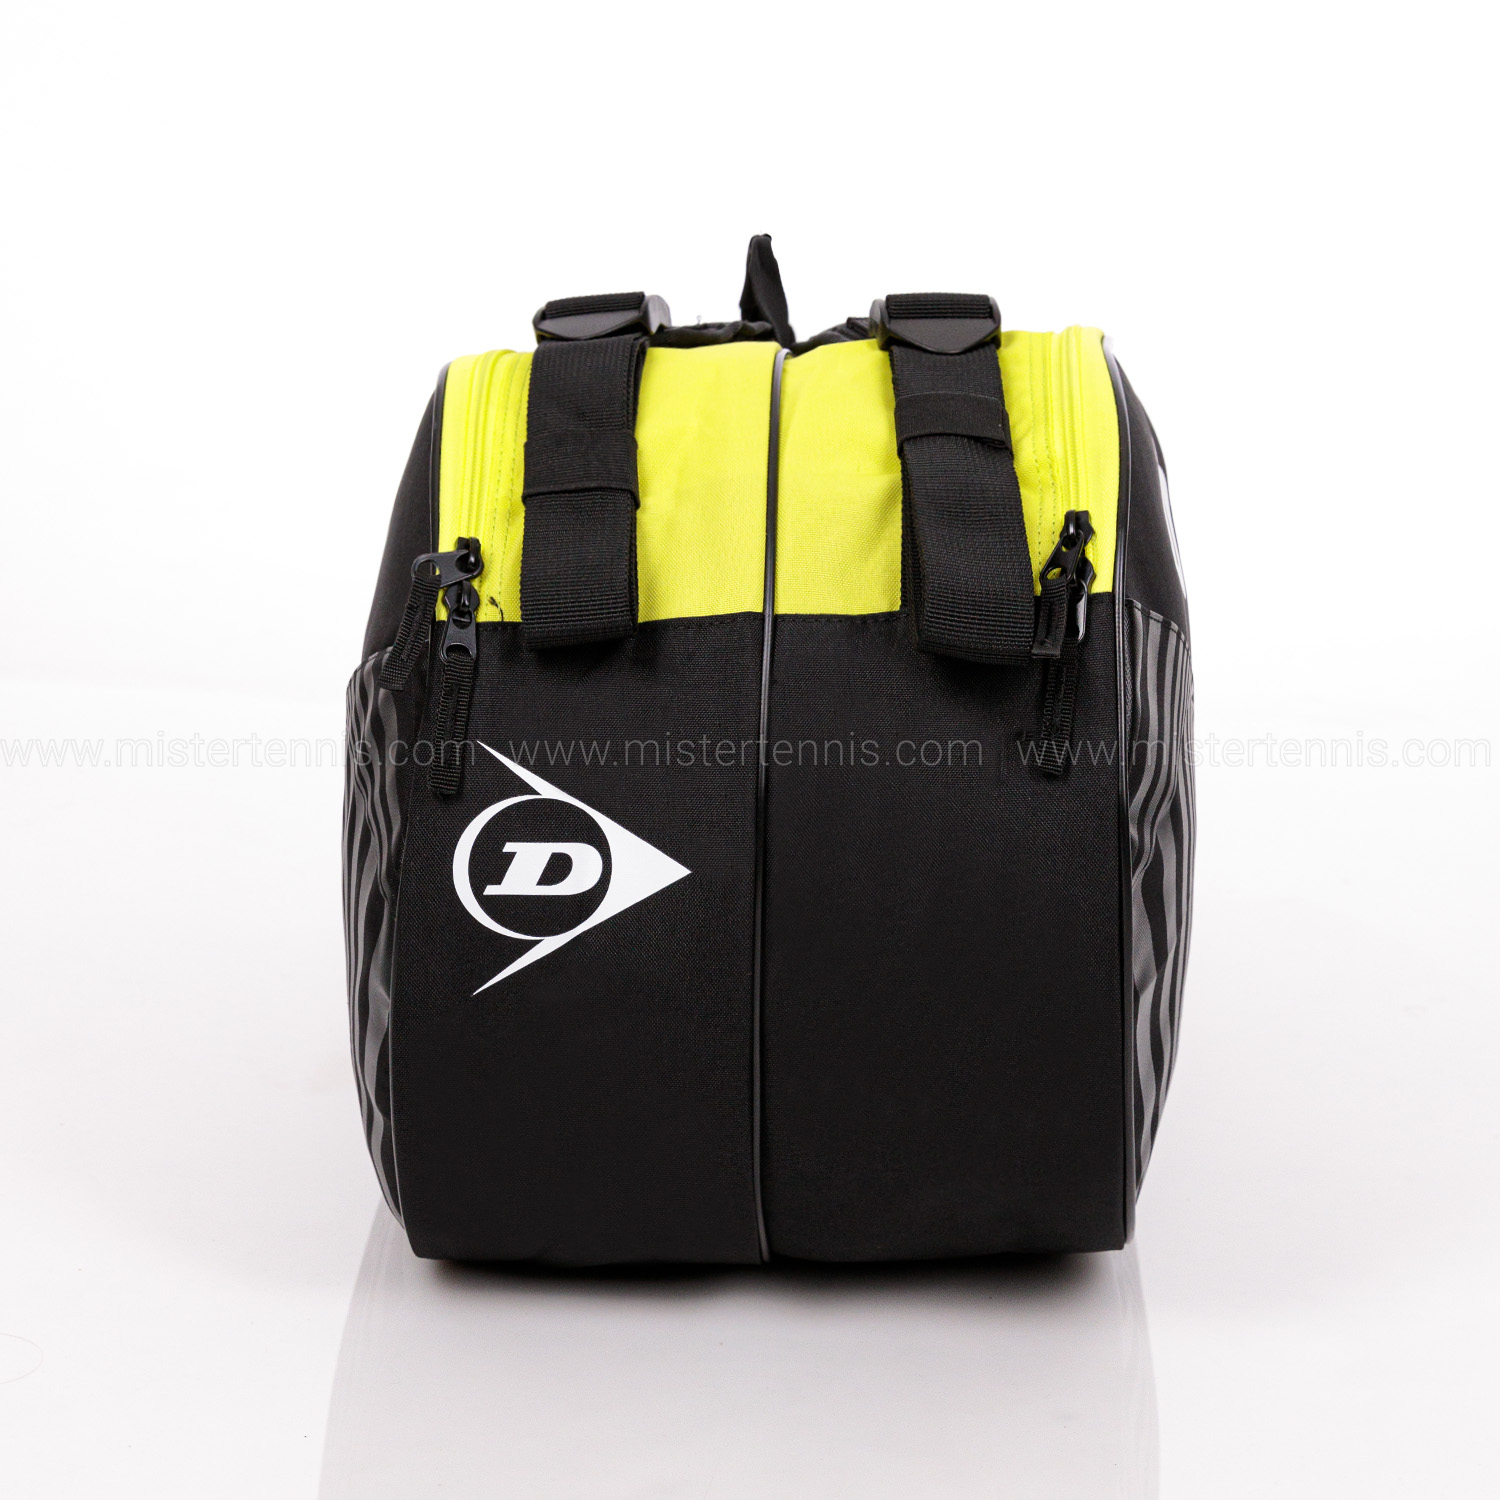 Dunlop SX Club x 10 Borsa - Black/Yellow